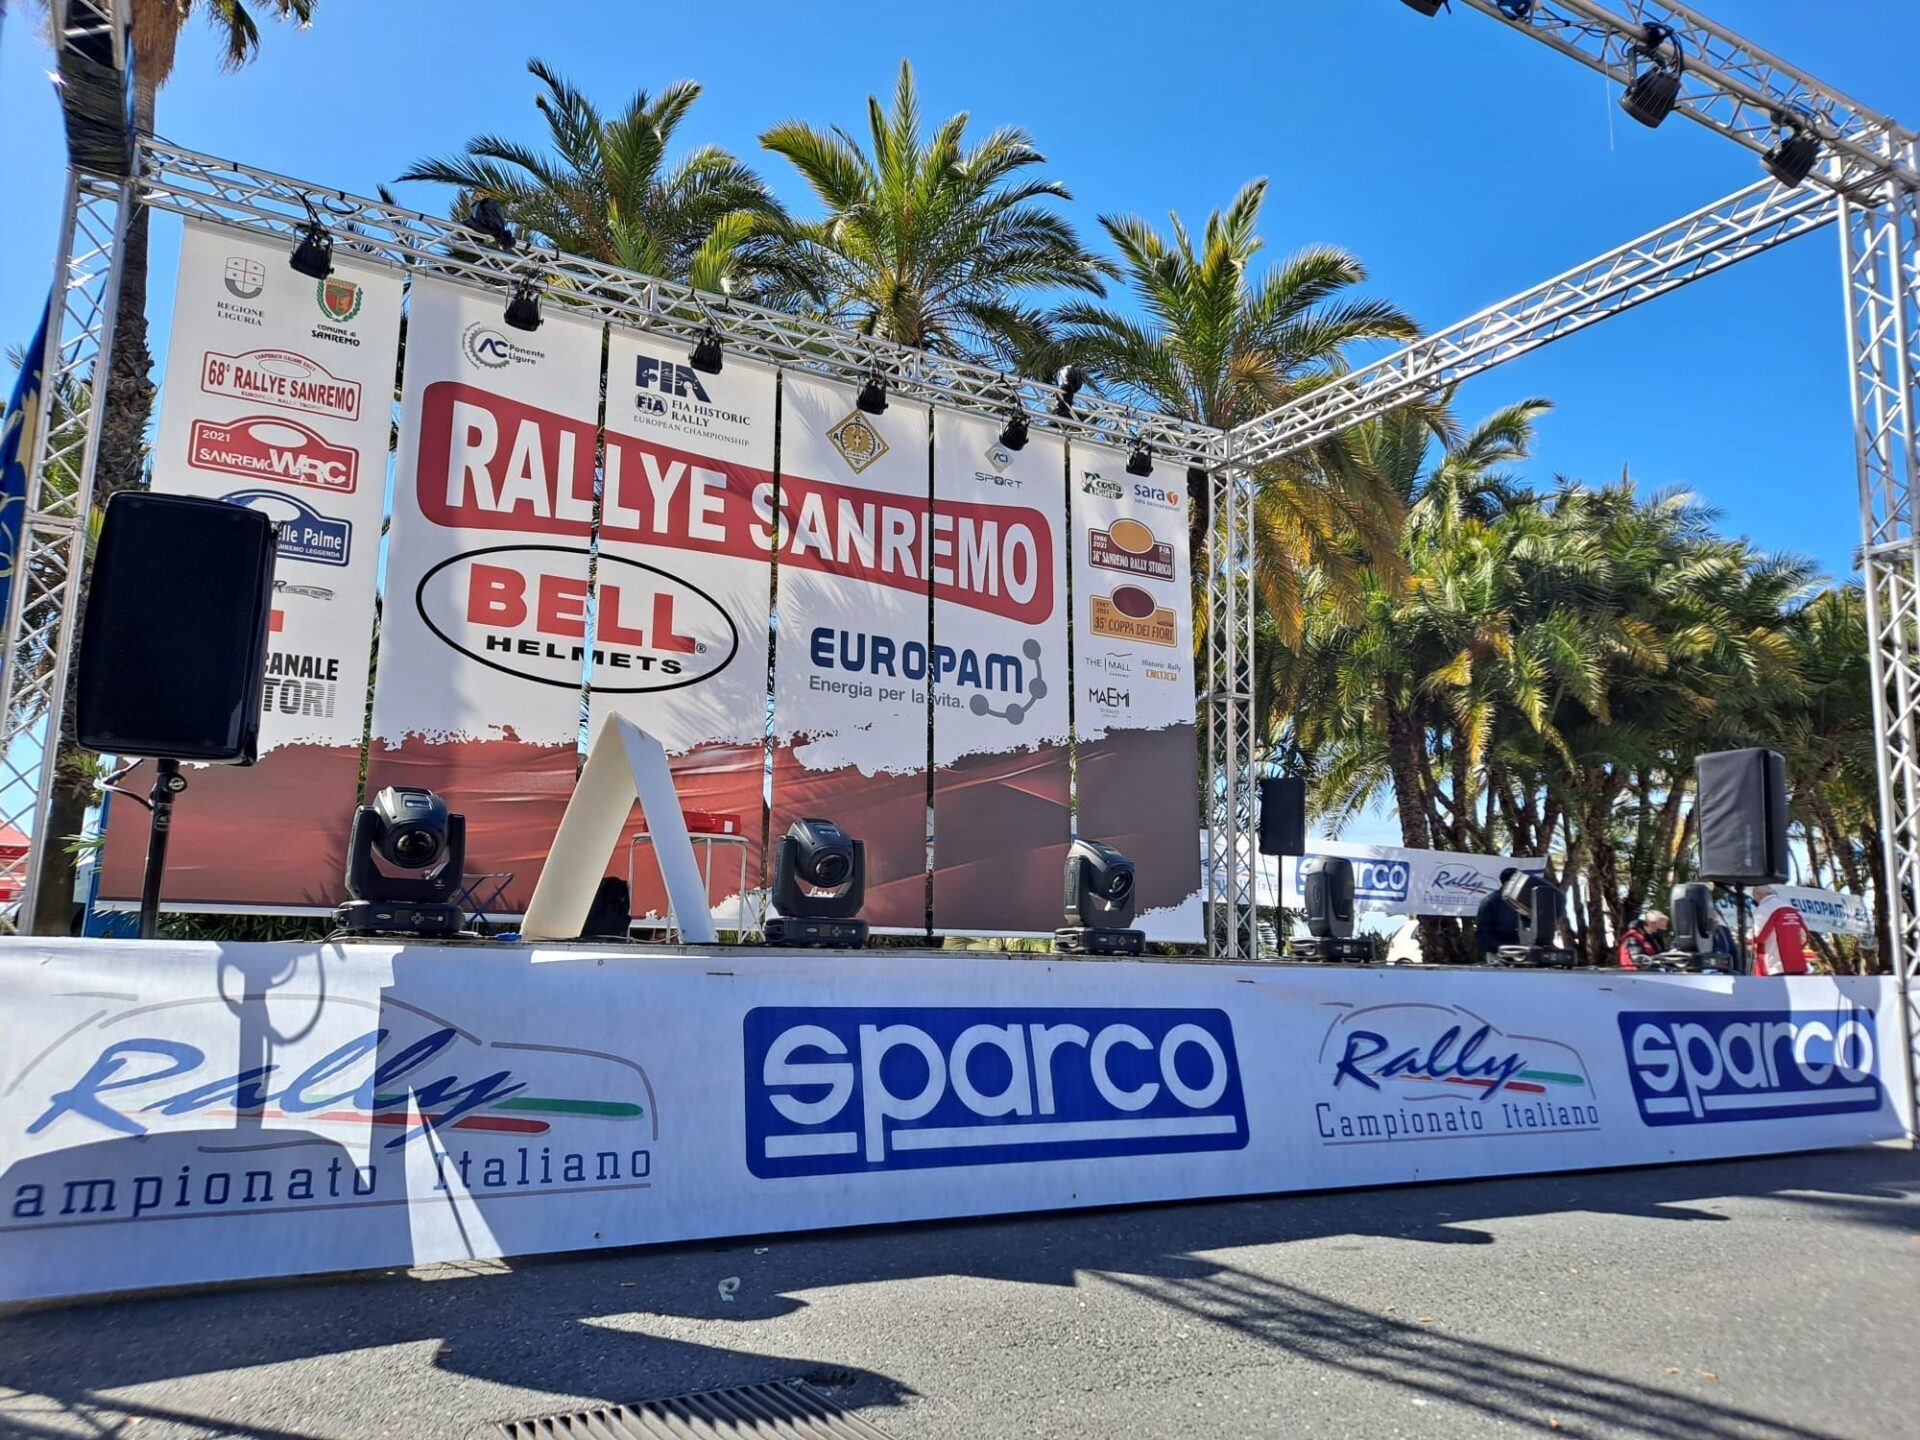 Βαρύς ο πέλεκυς και αφαίρεση αγωνιστικής άδειας για παράνομες δοκιμές εν όψει rally San Remo στην Ιταλία